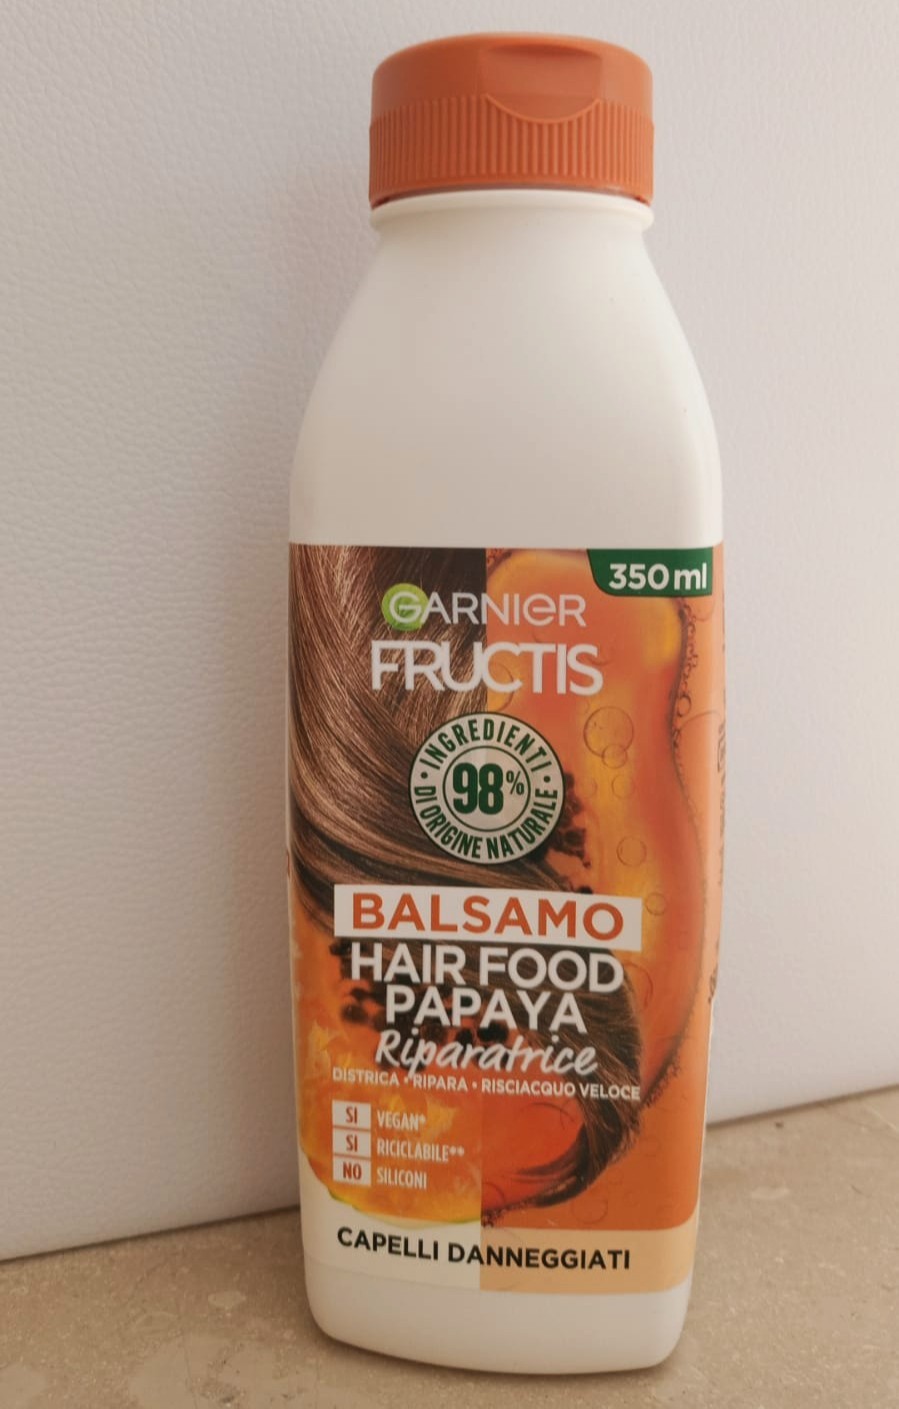 Balsamo Fructis Hair Food Papaya Riparatrice